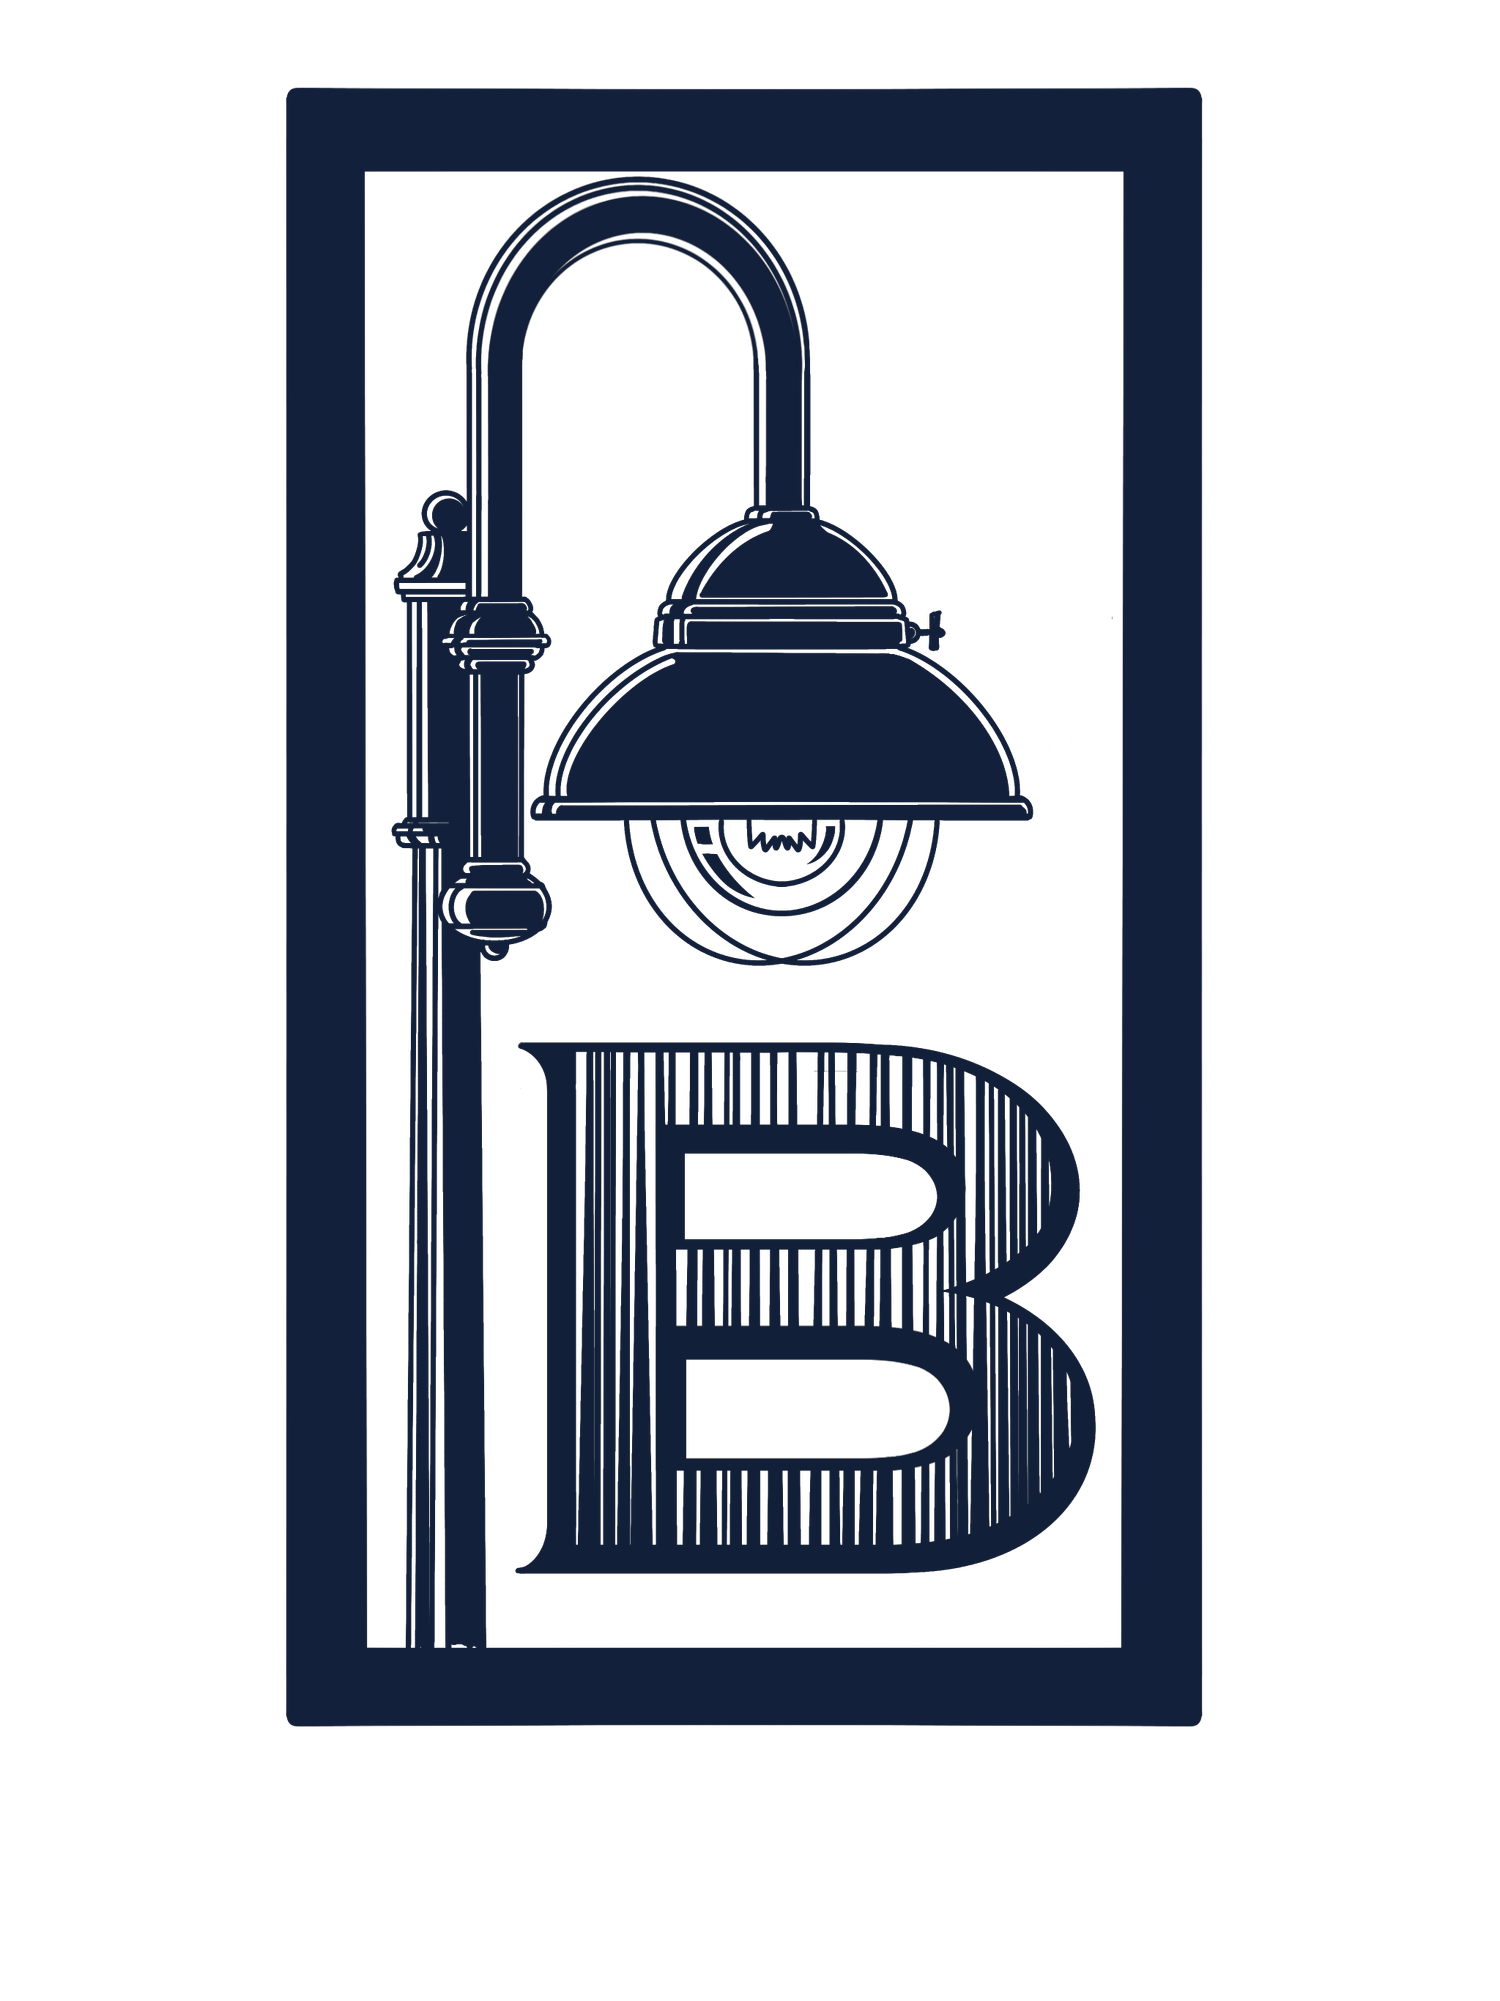 The Boardwalk Logo